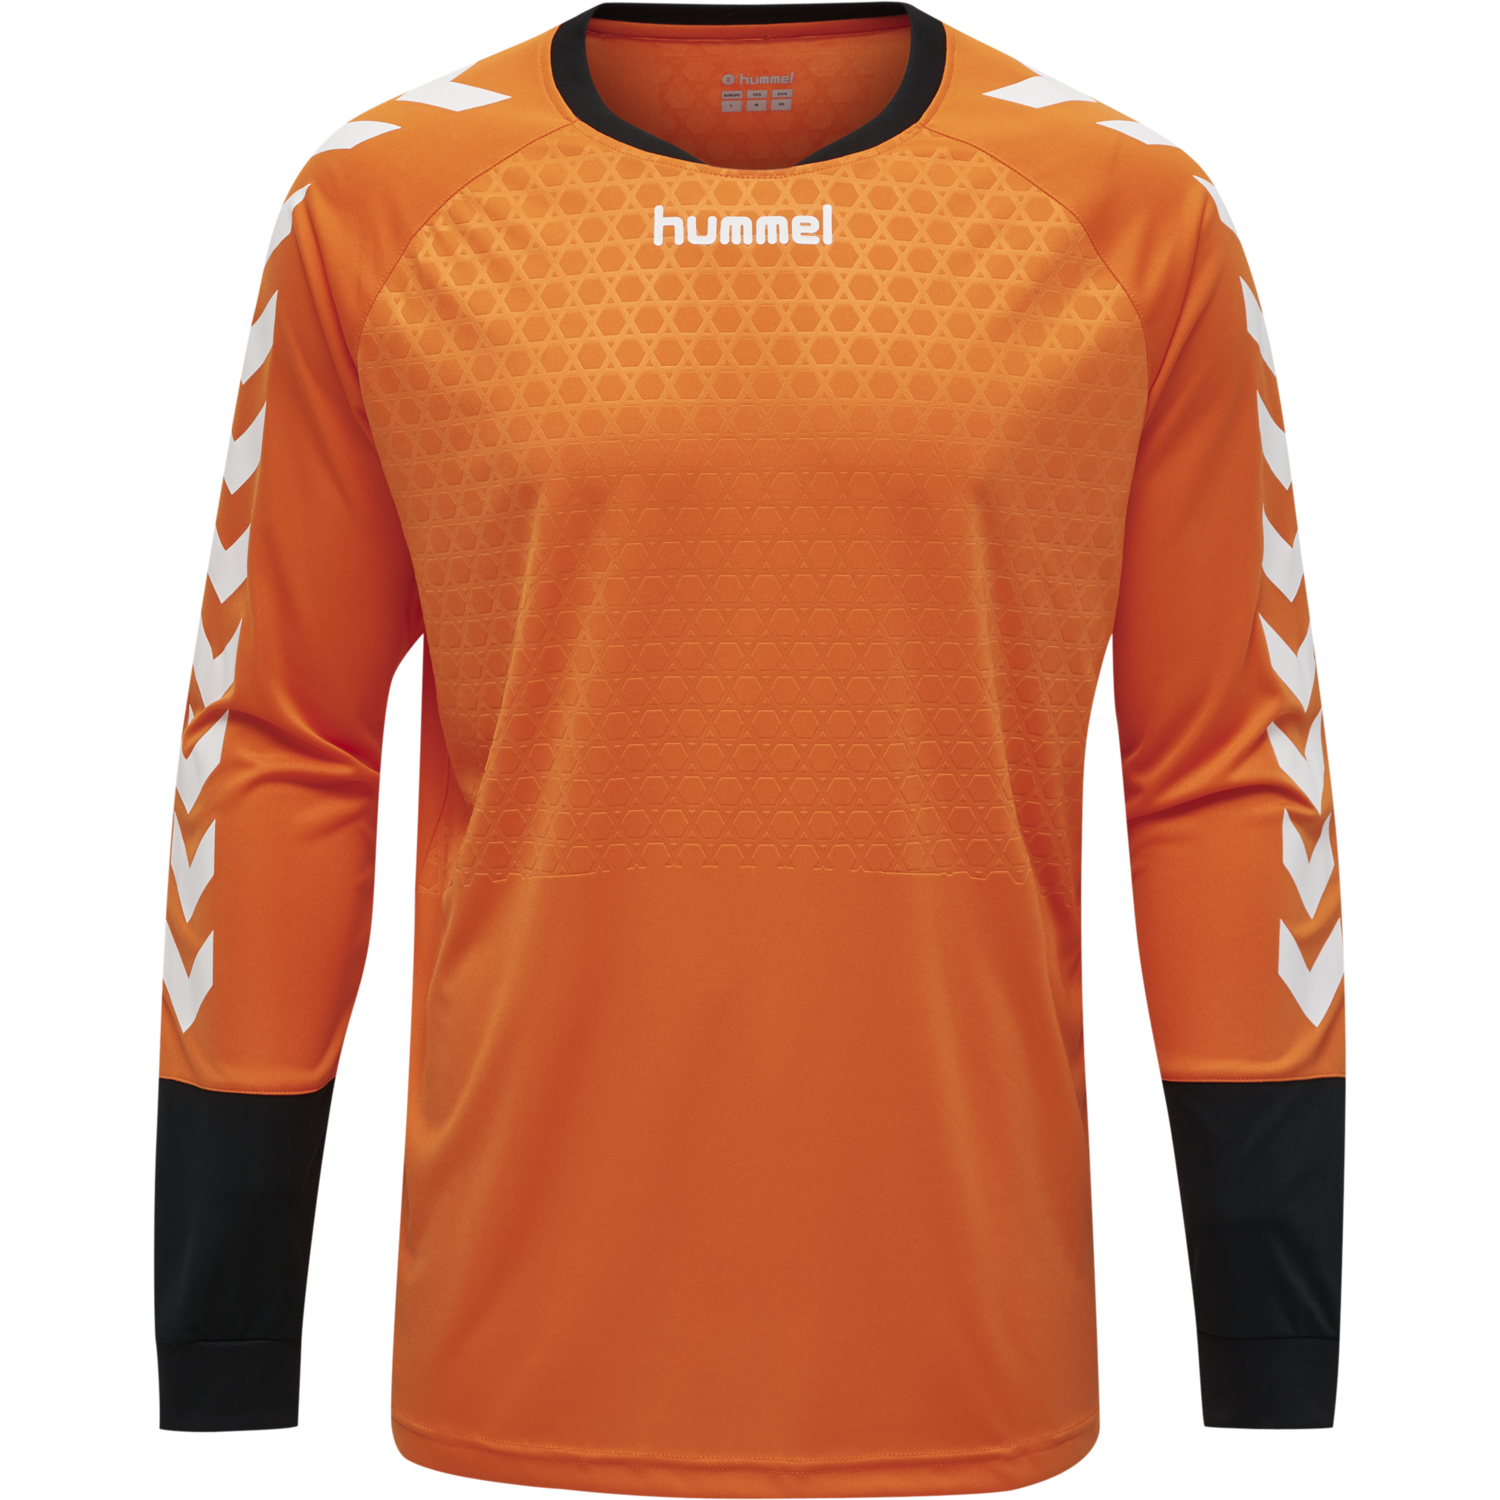 Hummel Essential Goalkeeper Jersey Torwarttrikot orange NEU 79606 